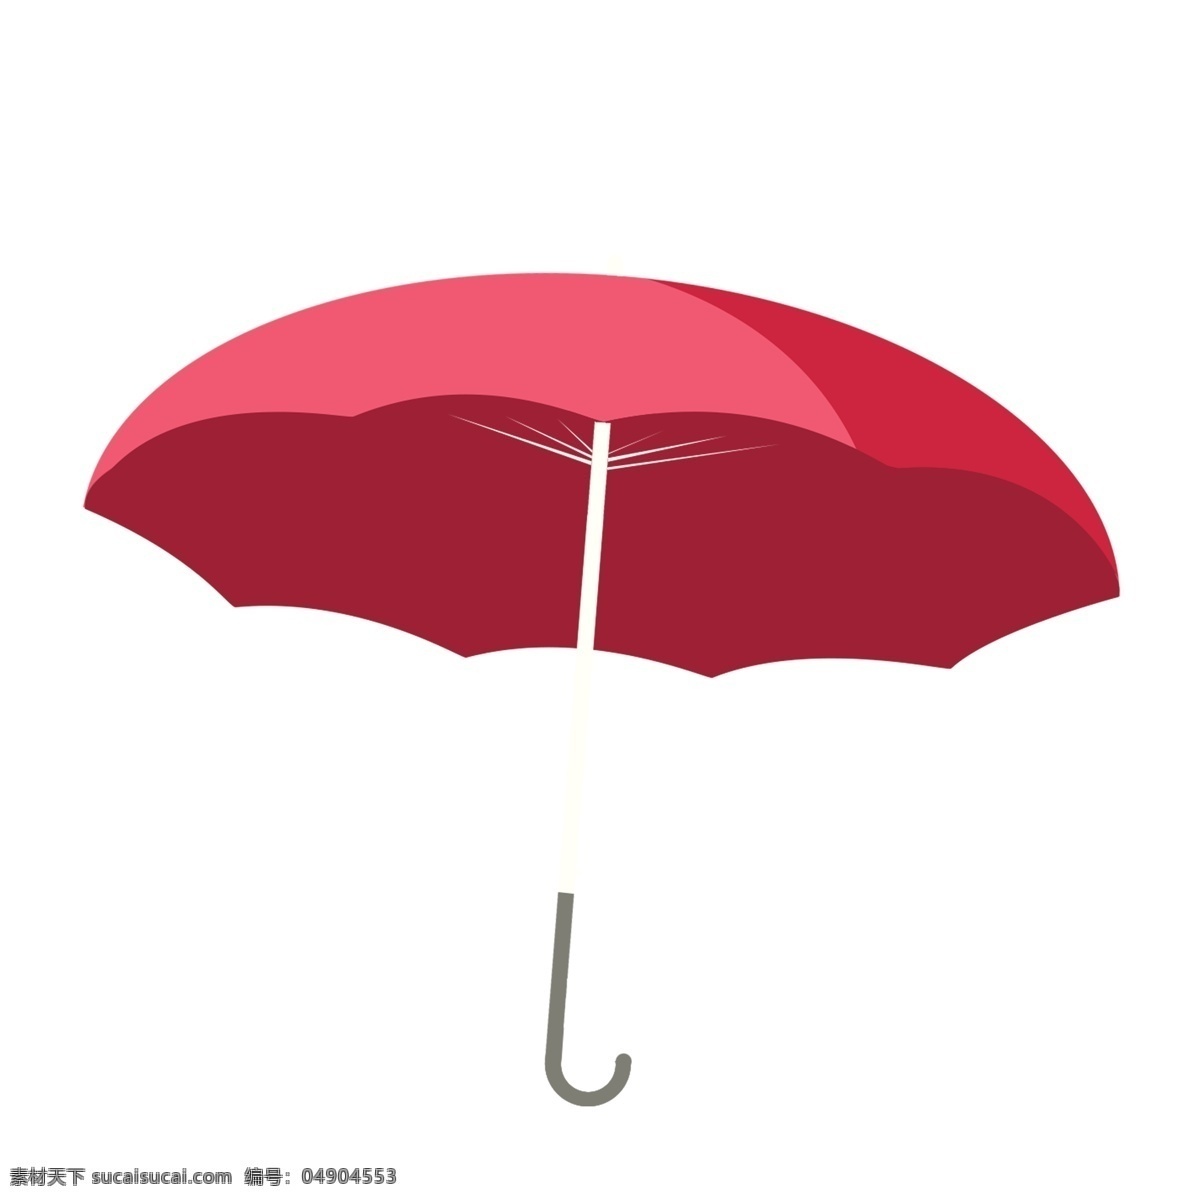 手绘 红伞 图案 元素 雨伞 设计元素 简约 生活用品 雨伞图案 装饰图案 元素设计 创意元素 手绘元素 psd元素